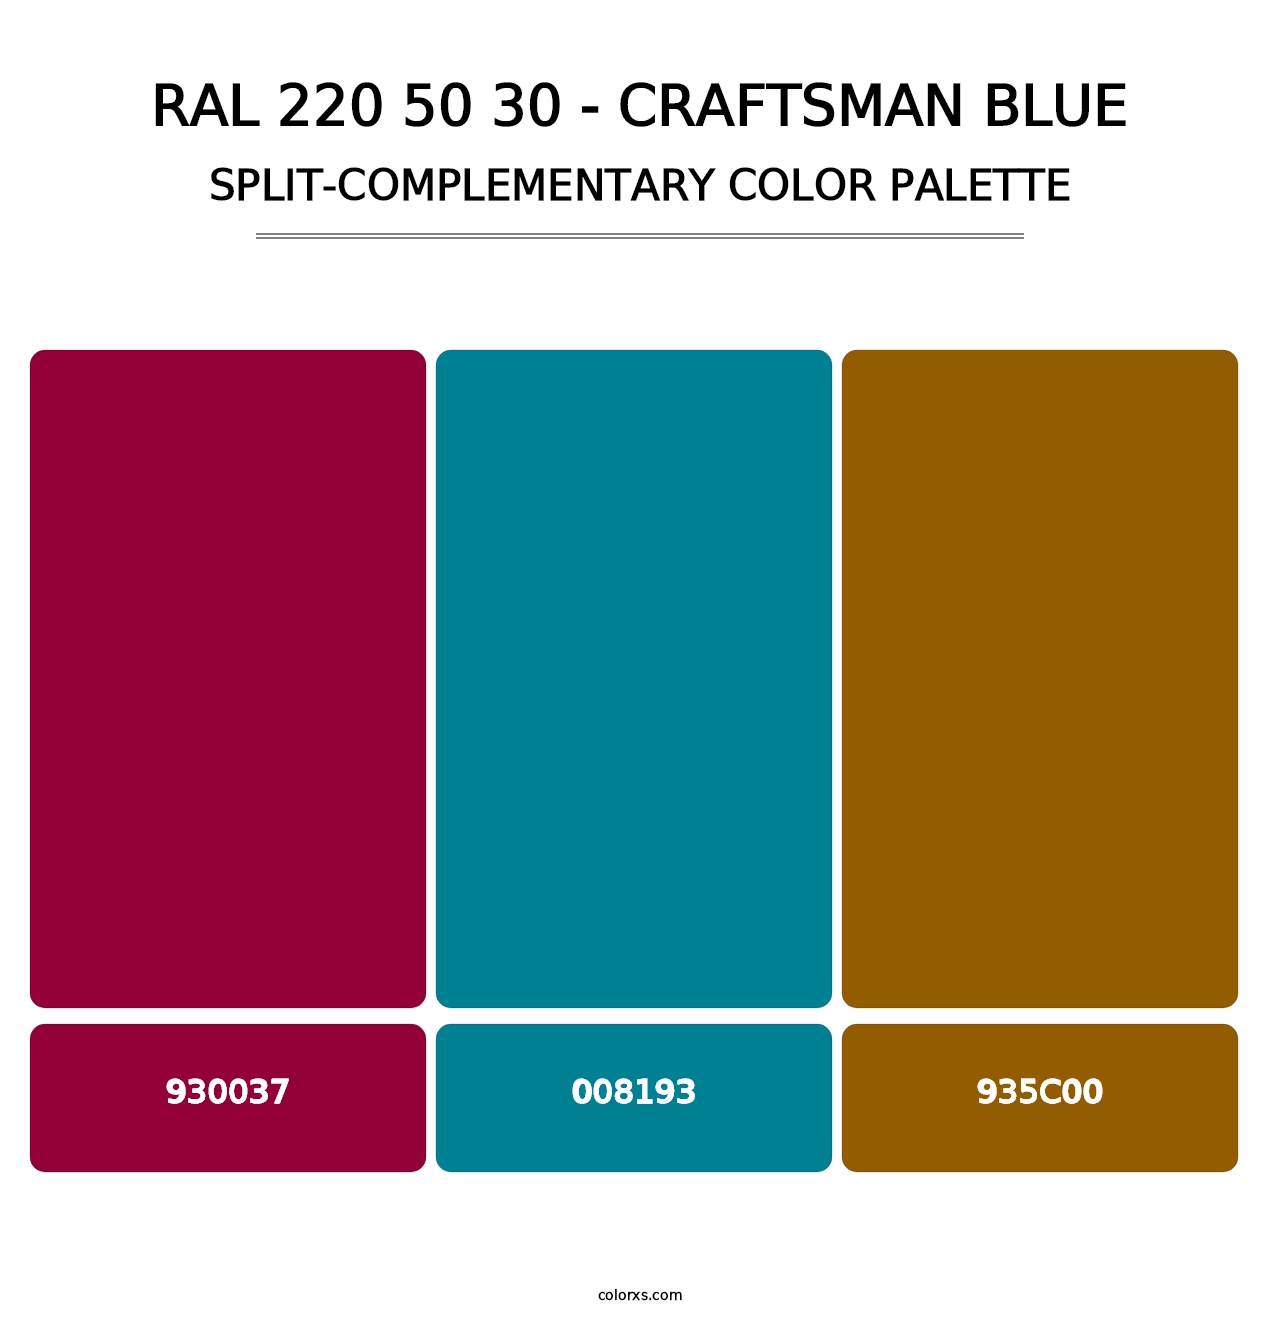 RAL 220 50 30 - Craftsman Blue - Split-Complementary Color Palette